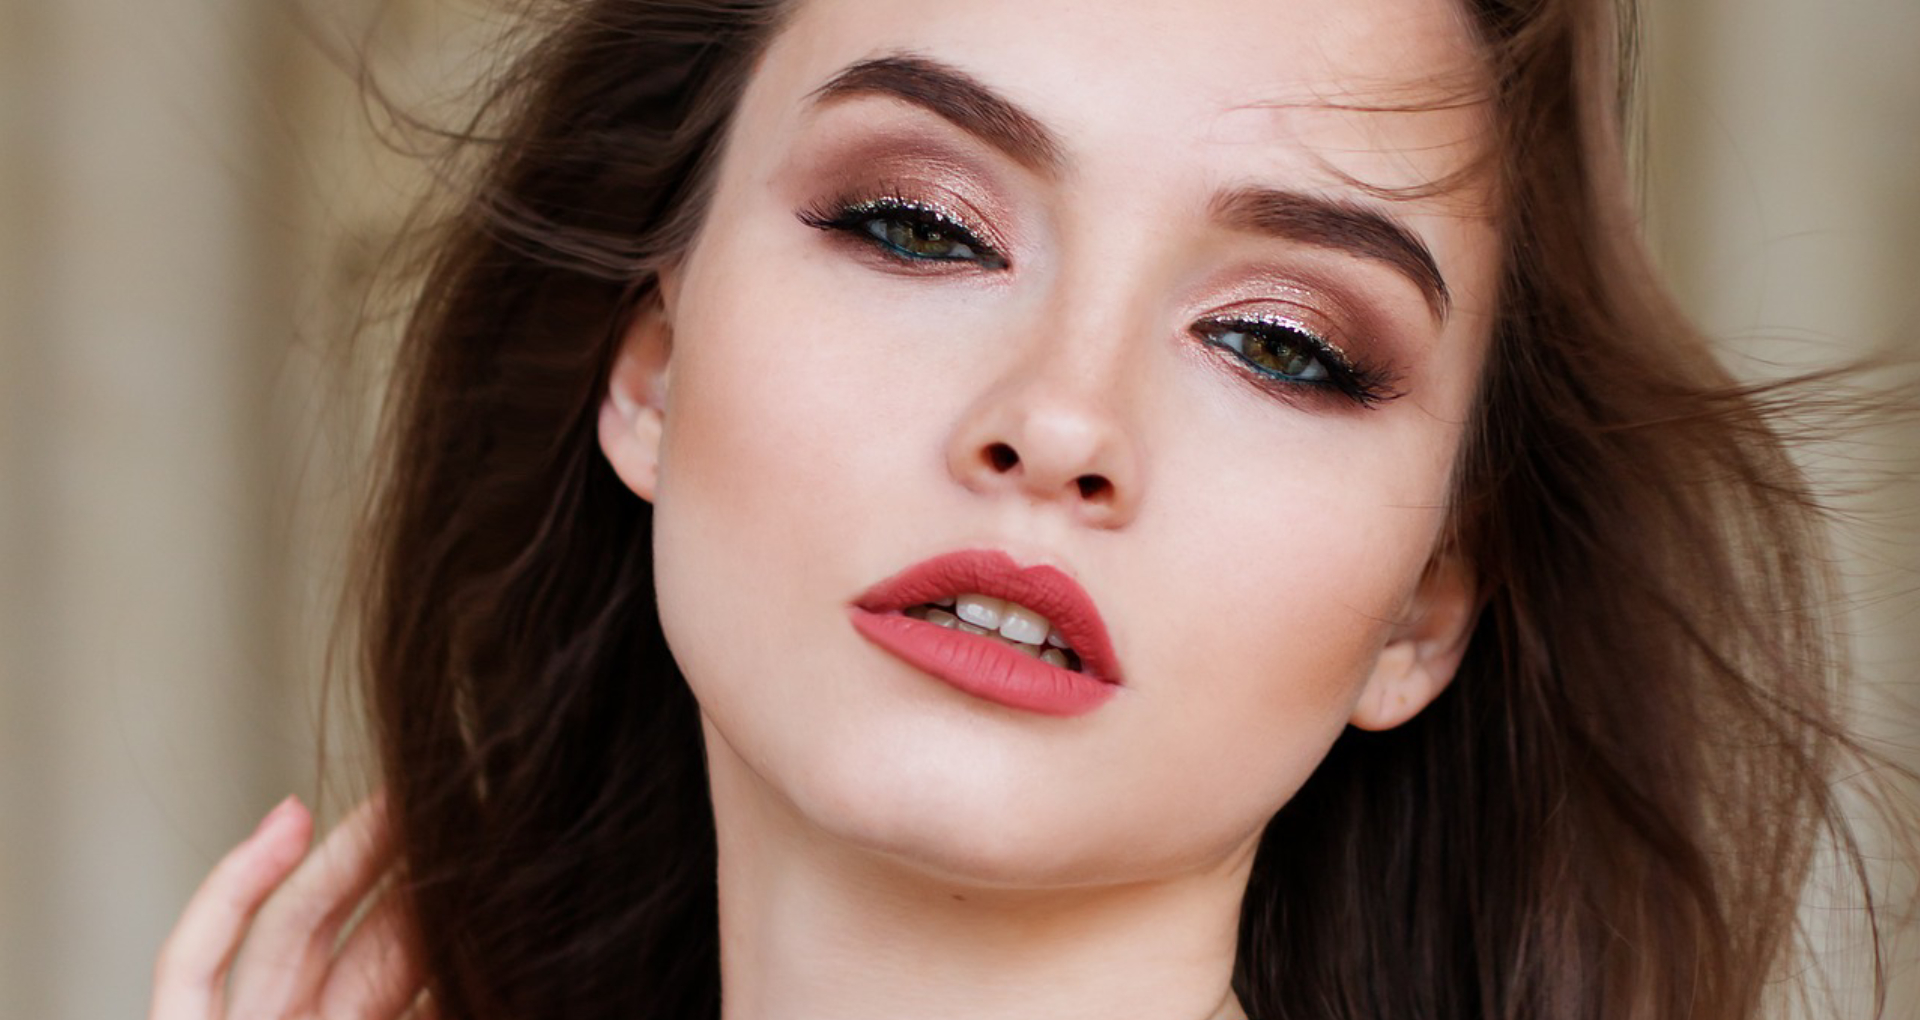 Makeup Tips: खूबसूरत और परफेक्ट लुक के लिए आईलाइनर लगाते वक्त कभी न करें ये 5 गलतियां